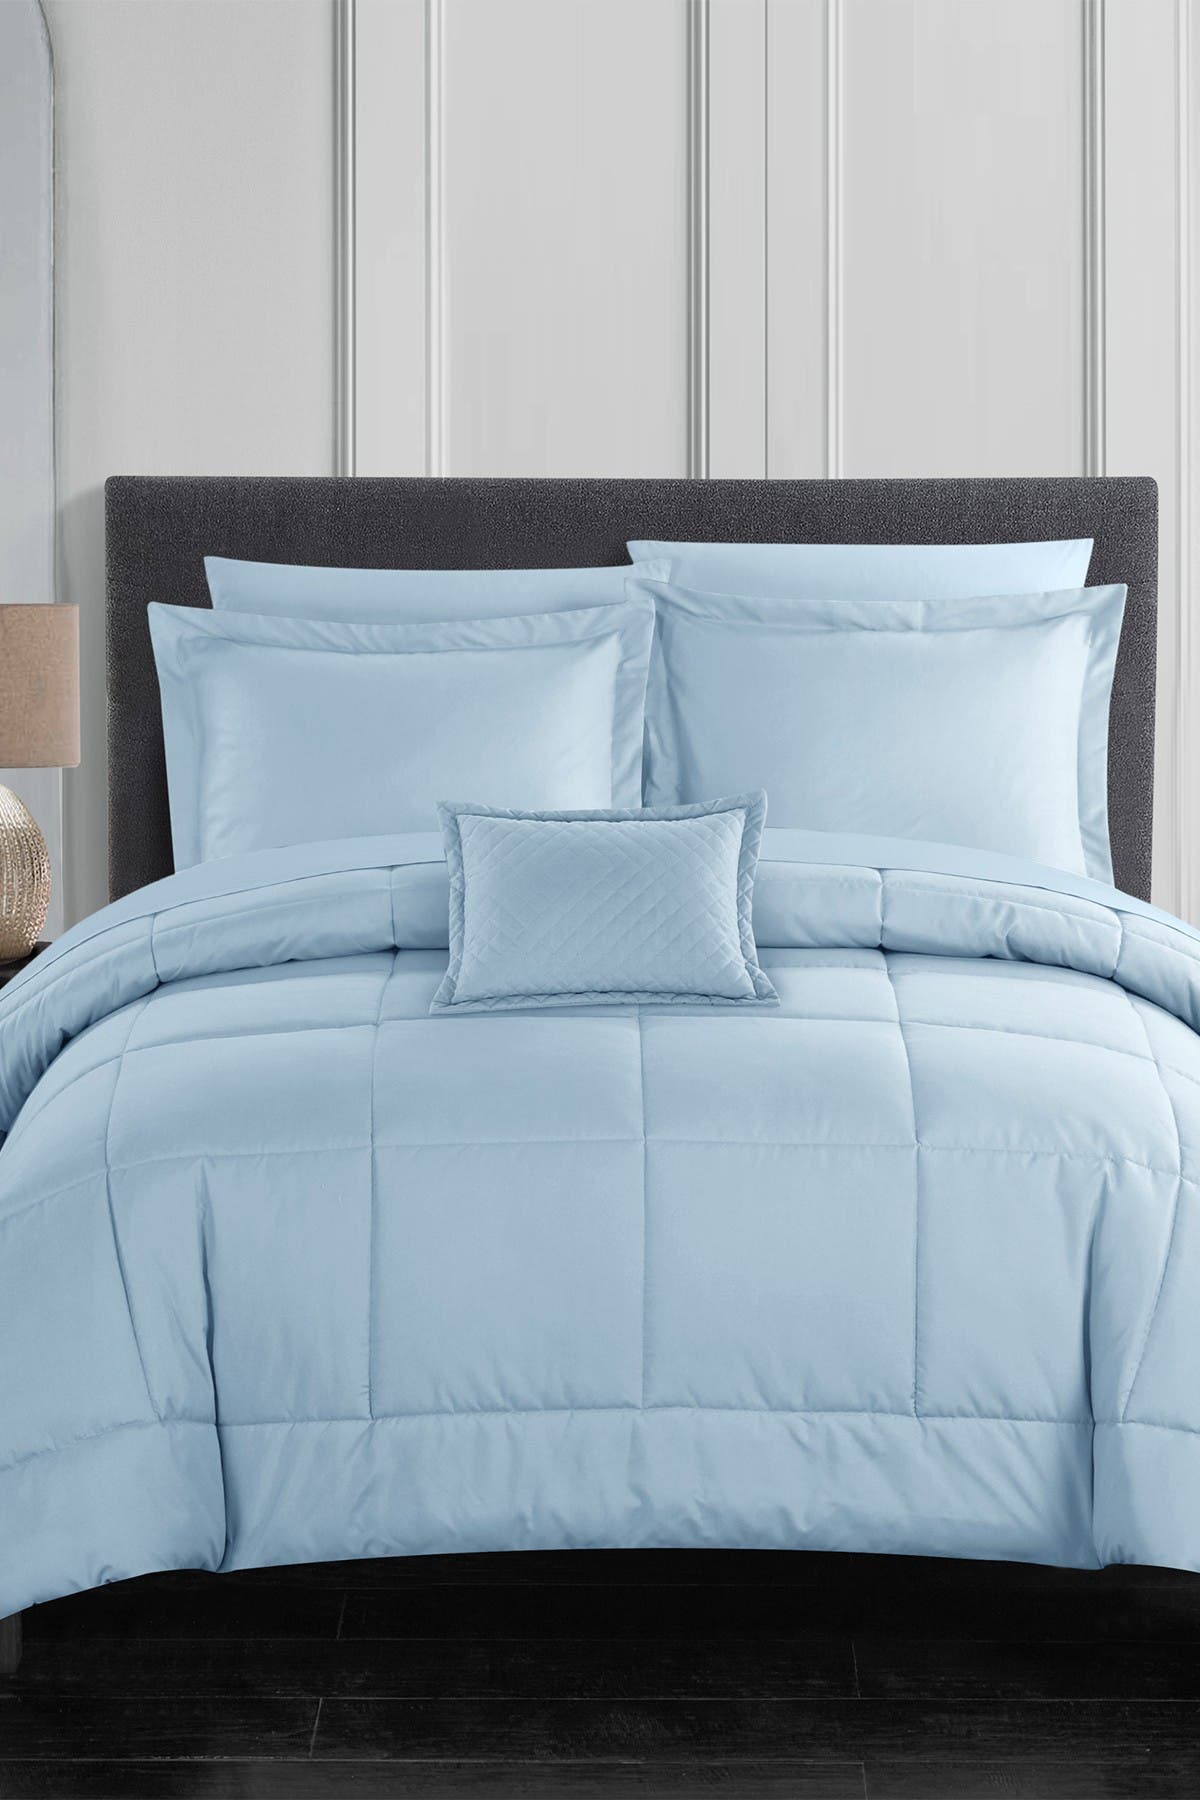 Chic Home Bedding Joshuah Stitched Solid Color Design Bed In A Bag King Comforter Set Blue Nordstrom Rack